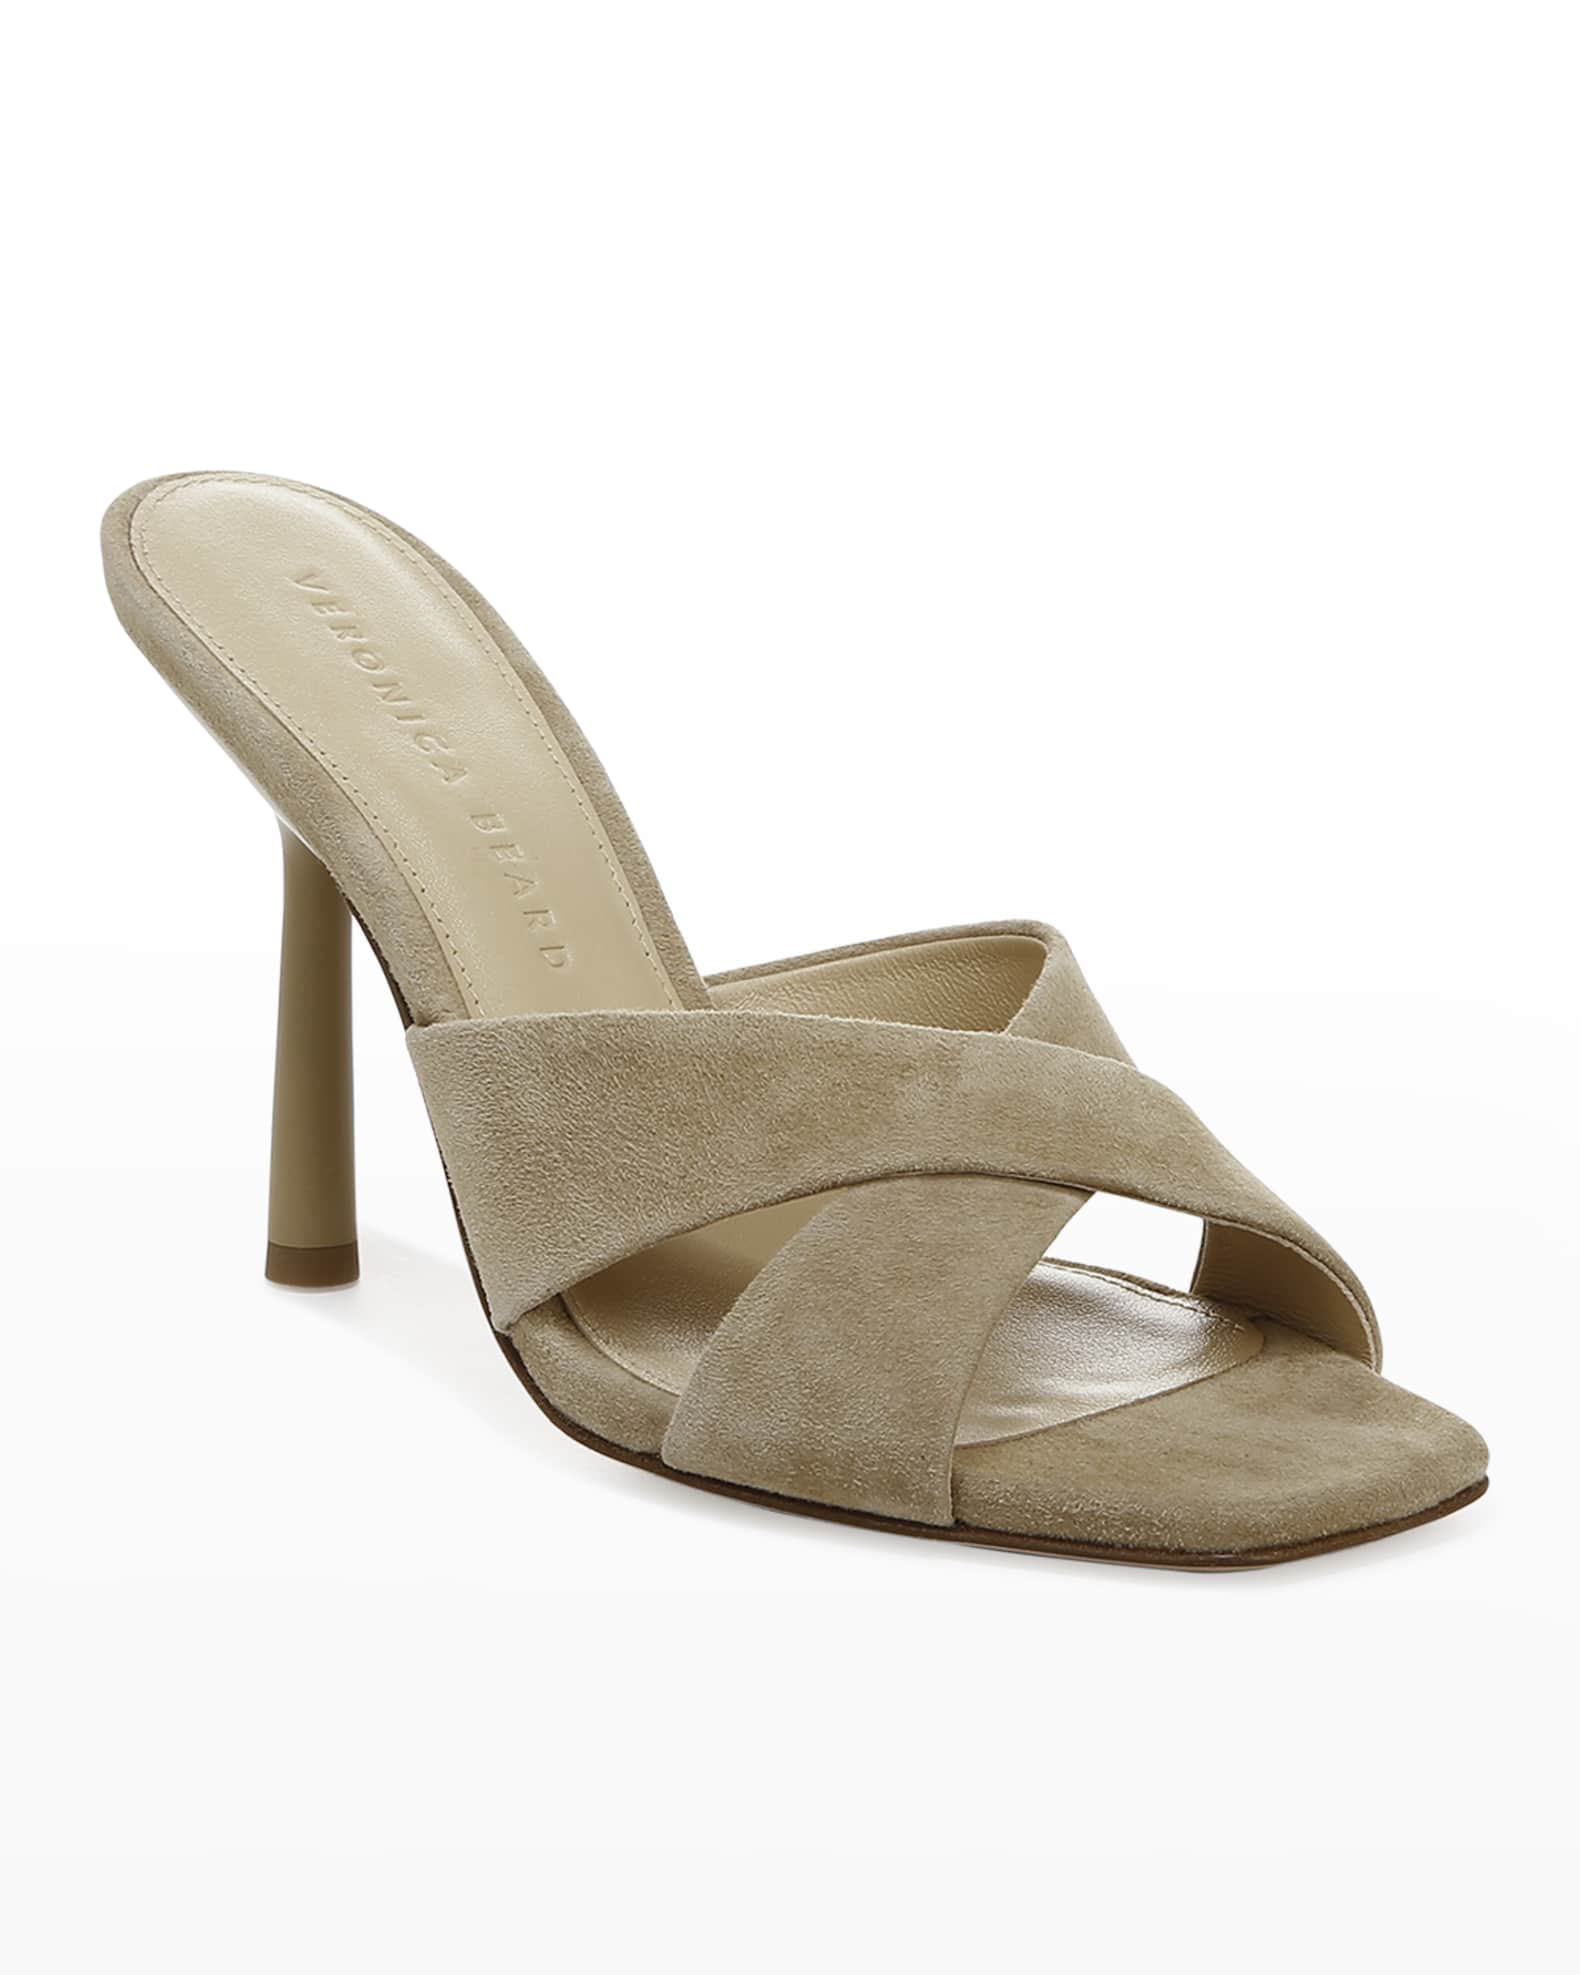 Veronica Beard Alsea Suede Crisscross Sandals | Neiman Marcus